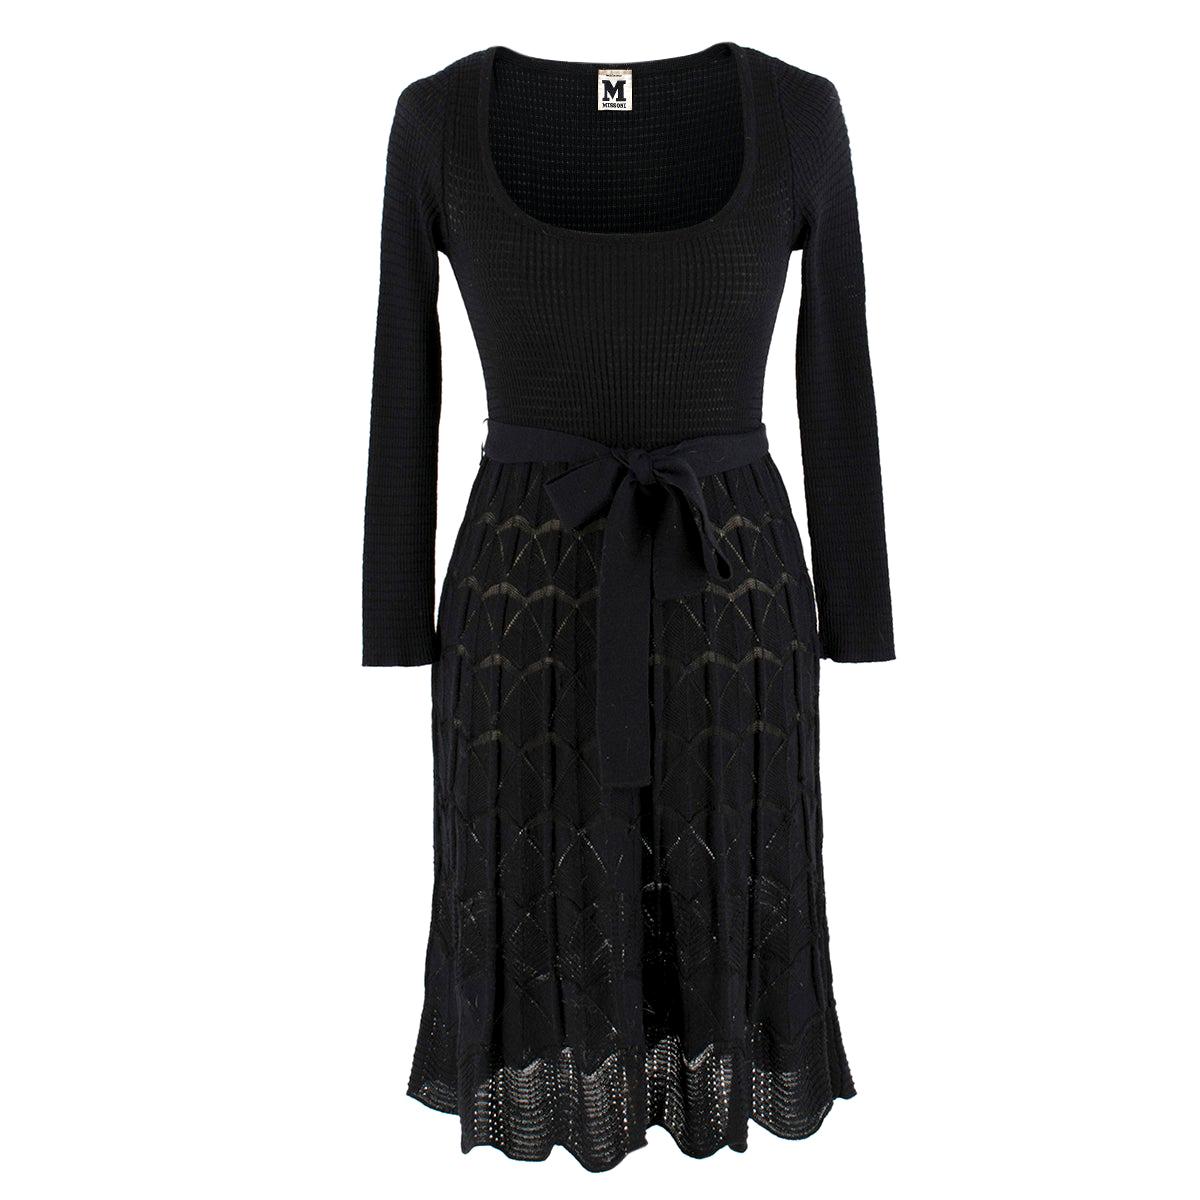 Missoni Black Crotchet Knit-Patterned Stretch Rope Dress - Size US 4